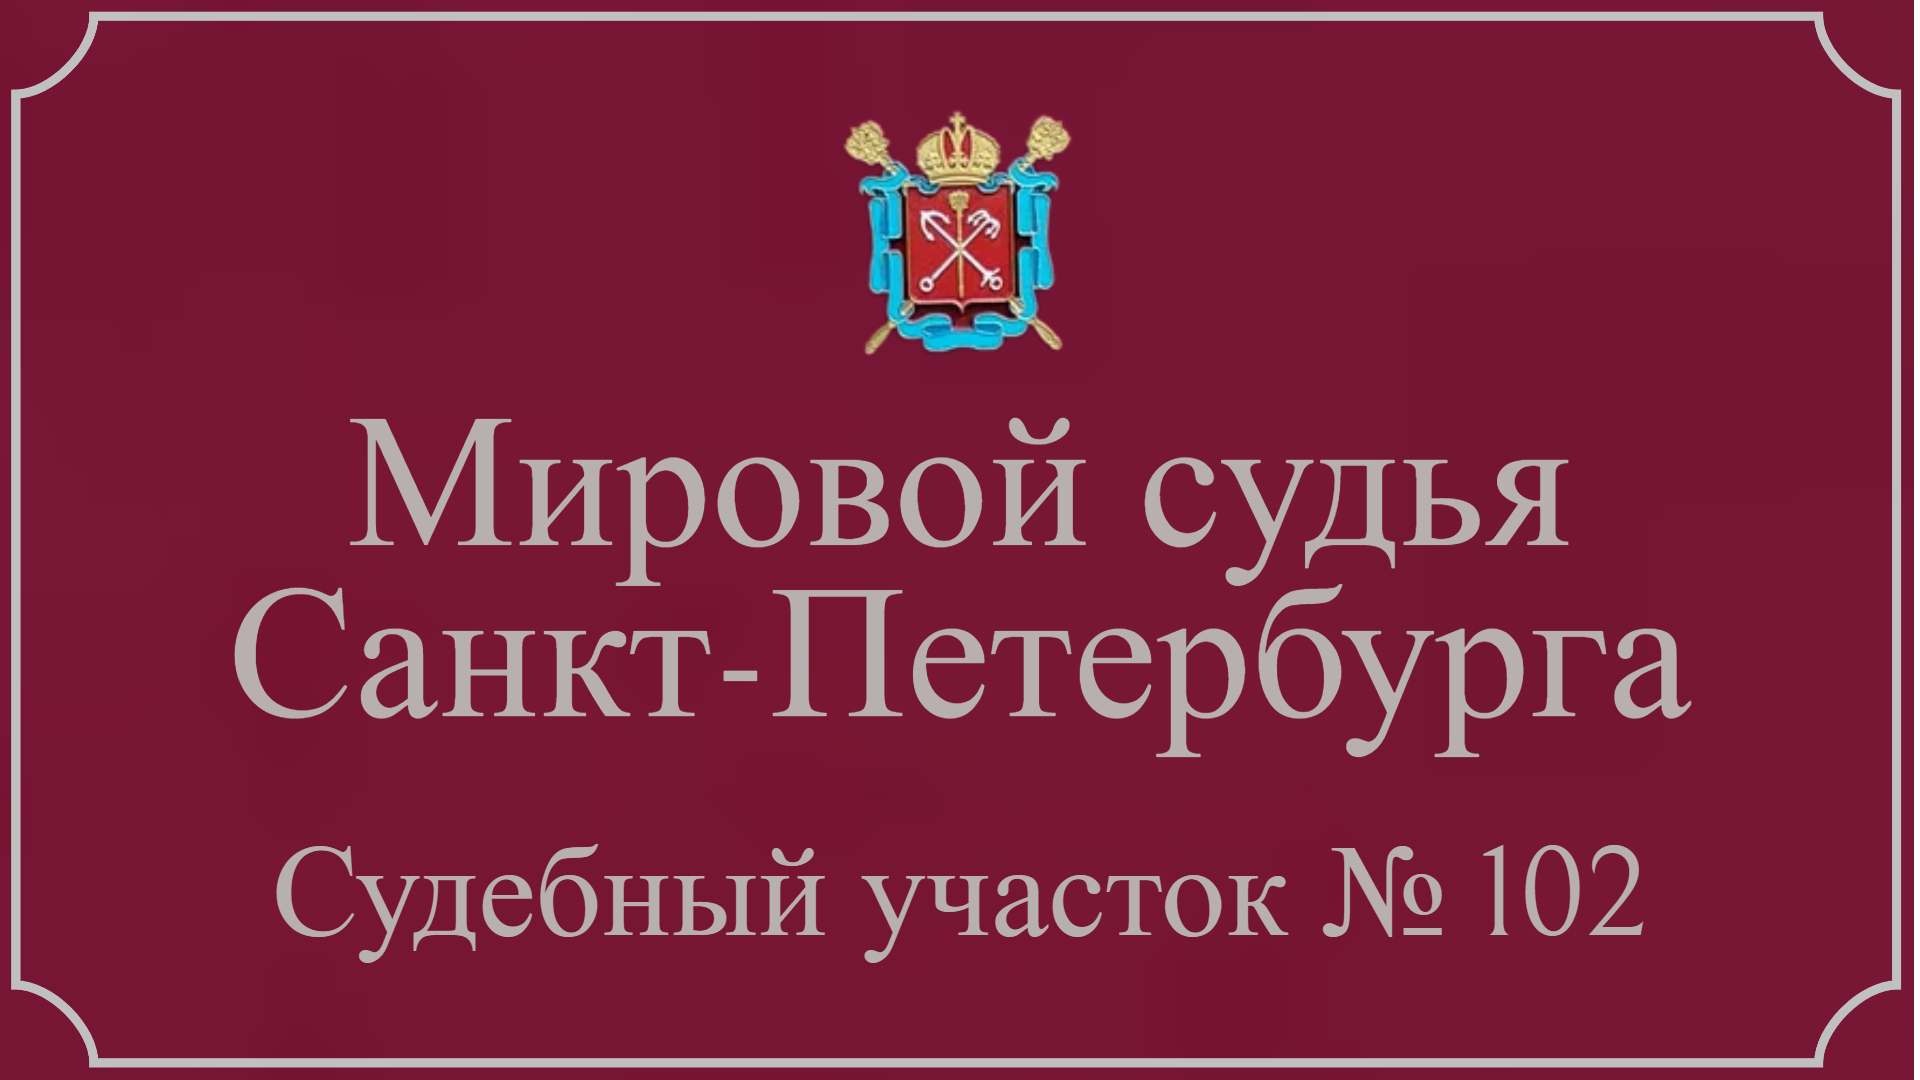 Информация по 102 судебному участку в Санкт-Петербурге.